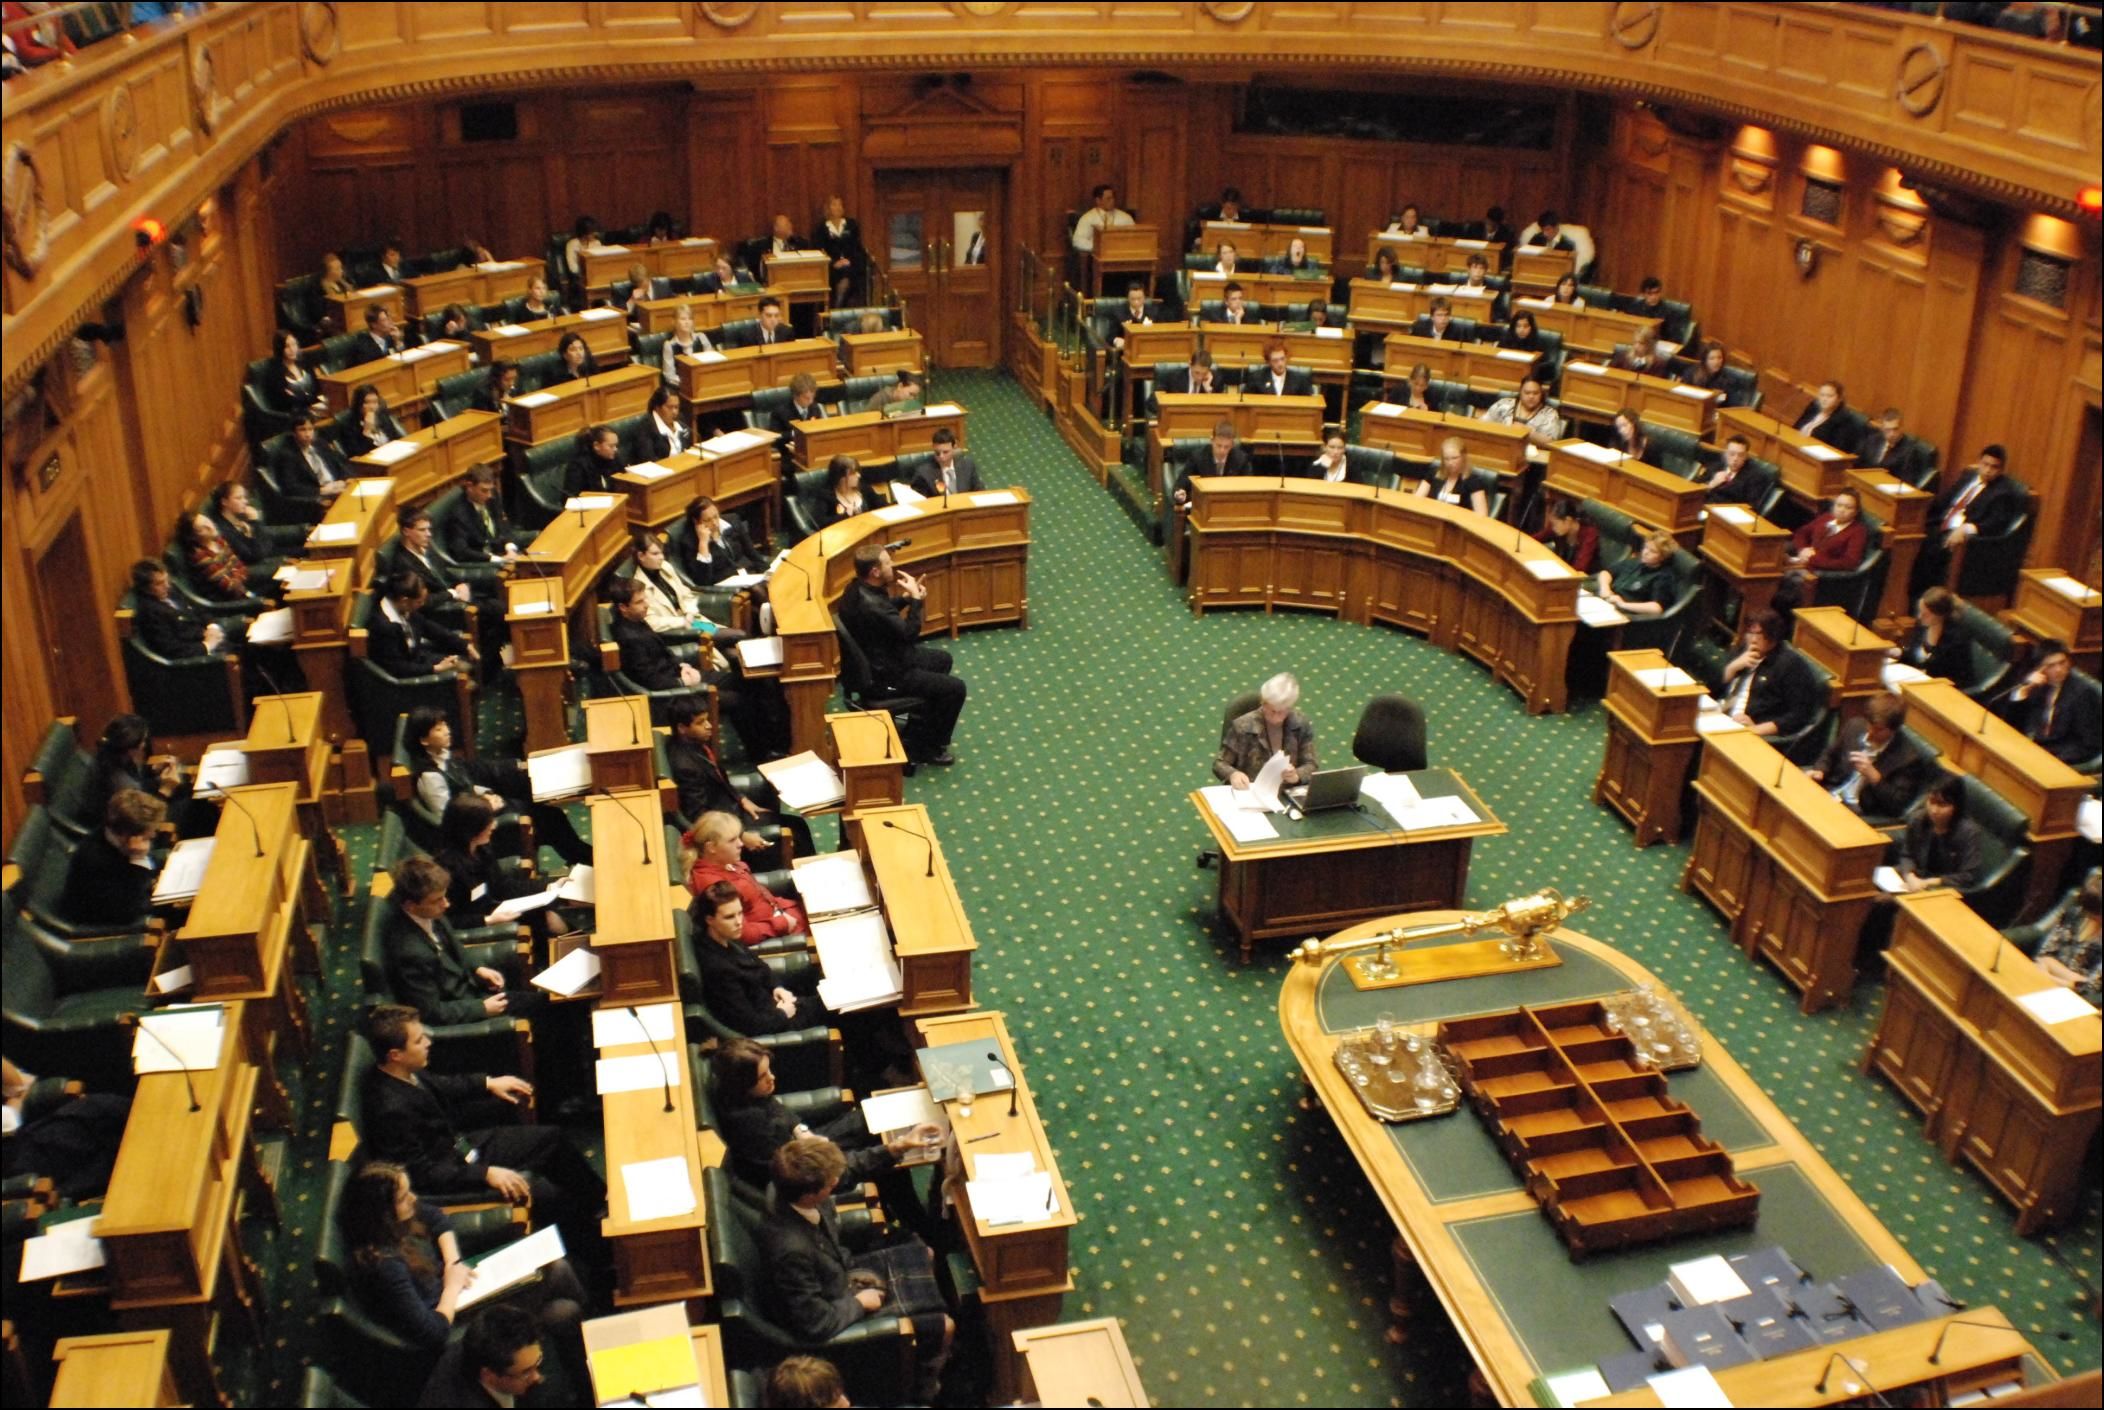 The new government has. Однопалатный парламент новой Зеландии. Палата представителей новой Зеландии. Политическая система новой Зеландии. Законодательная власть новой Зеландии.